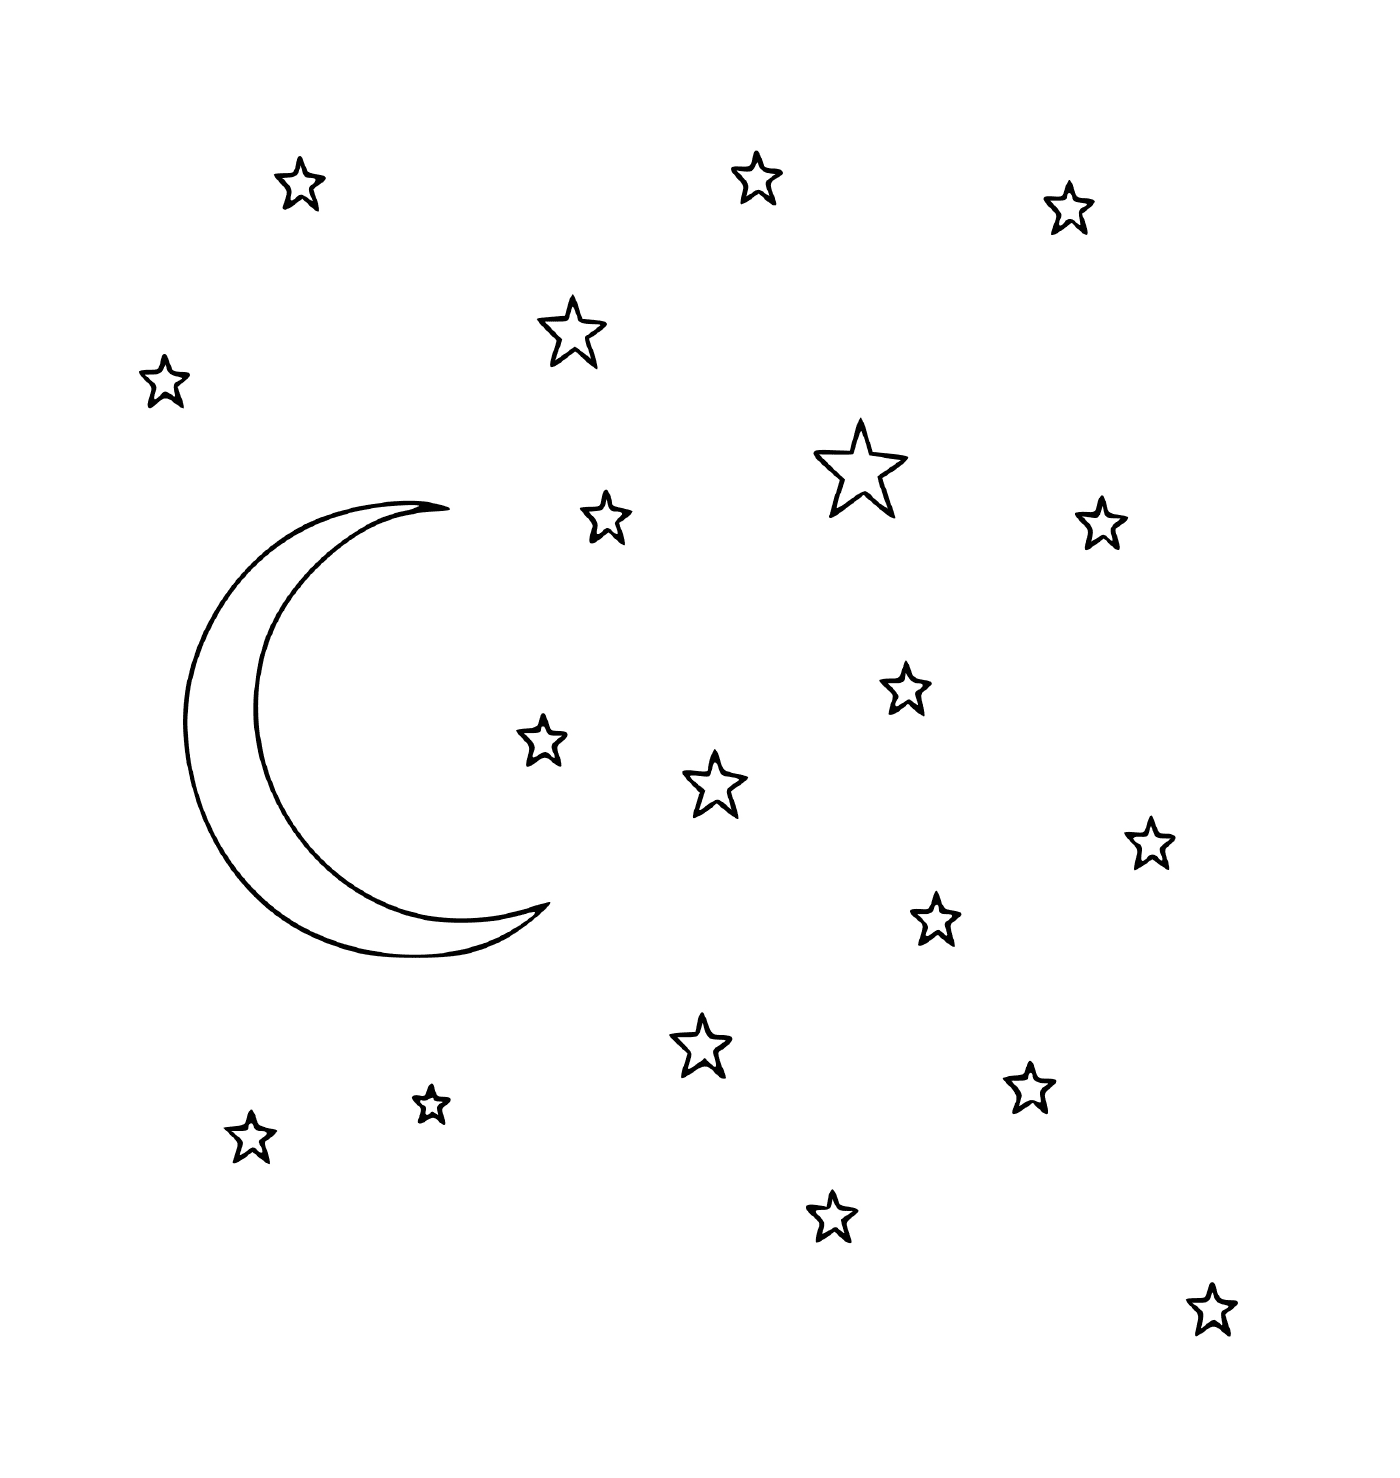  باء - القمر والنجوم 